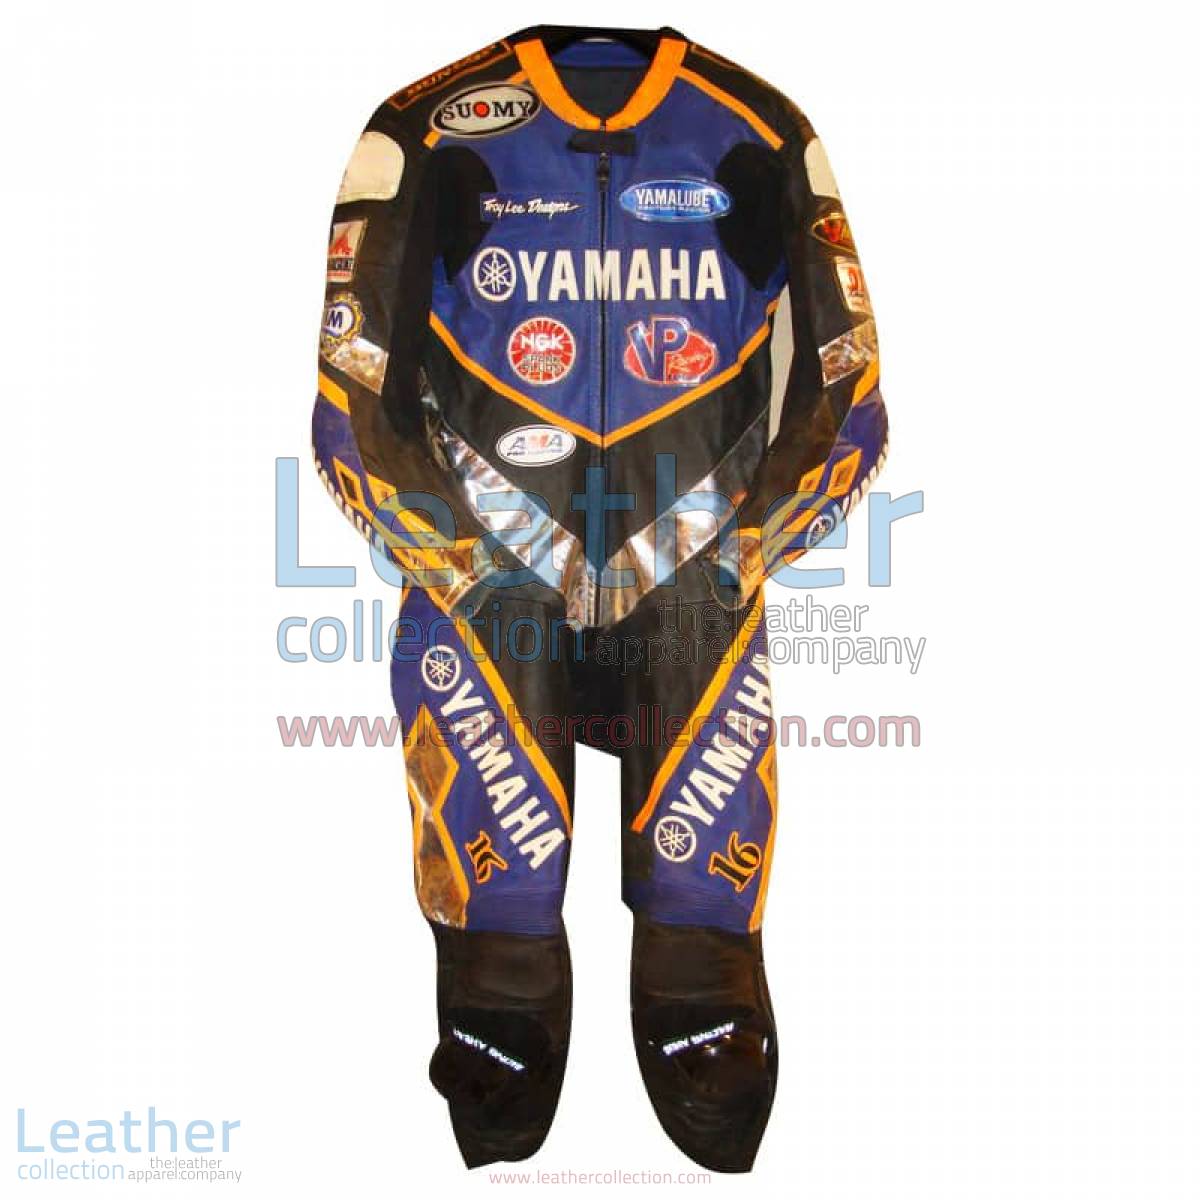 Anthony Gobert Yamaha Leathers 2002 AMA | anthony gobert,yamaha leathers